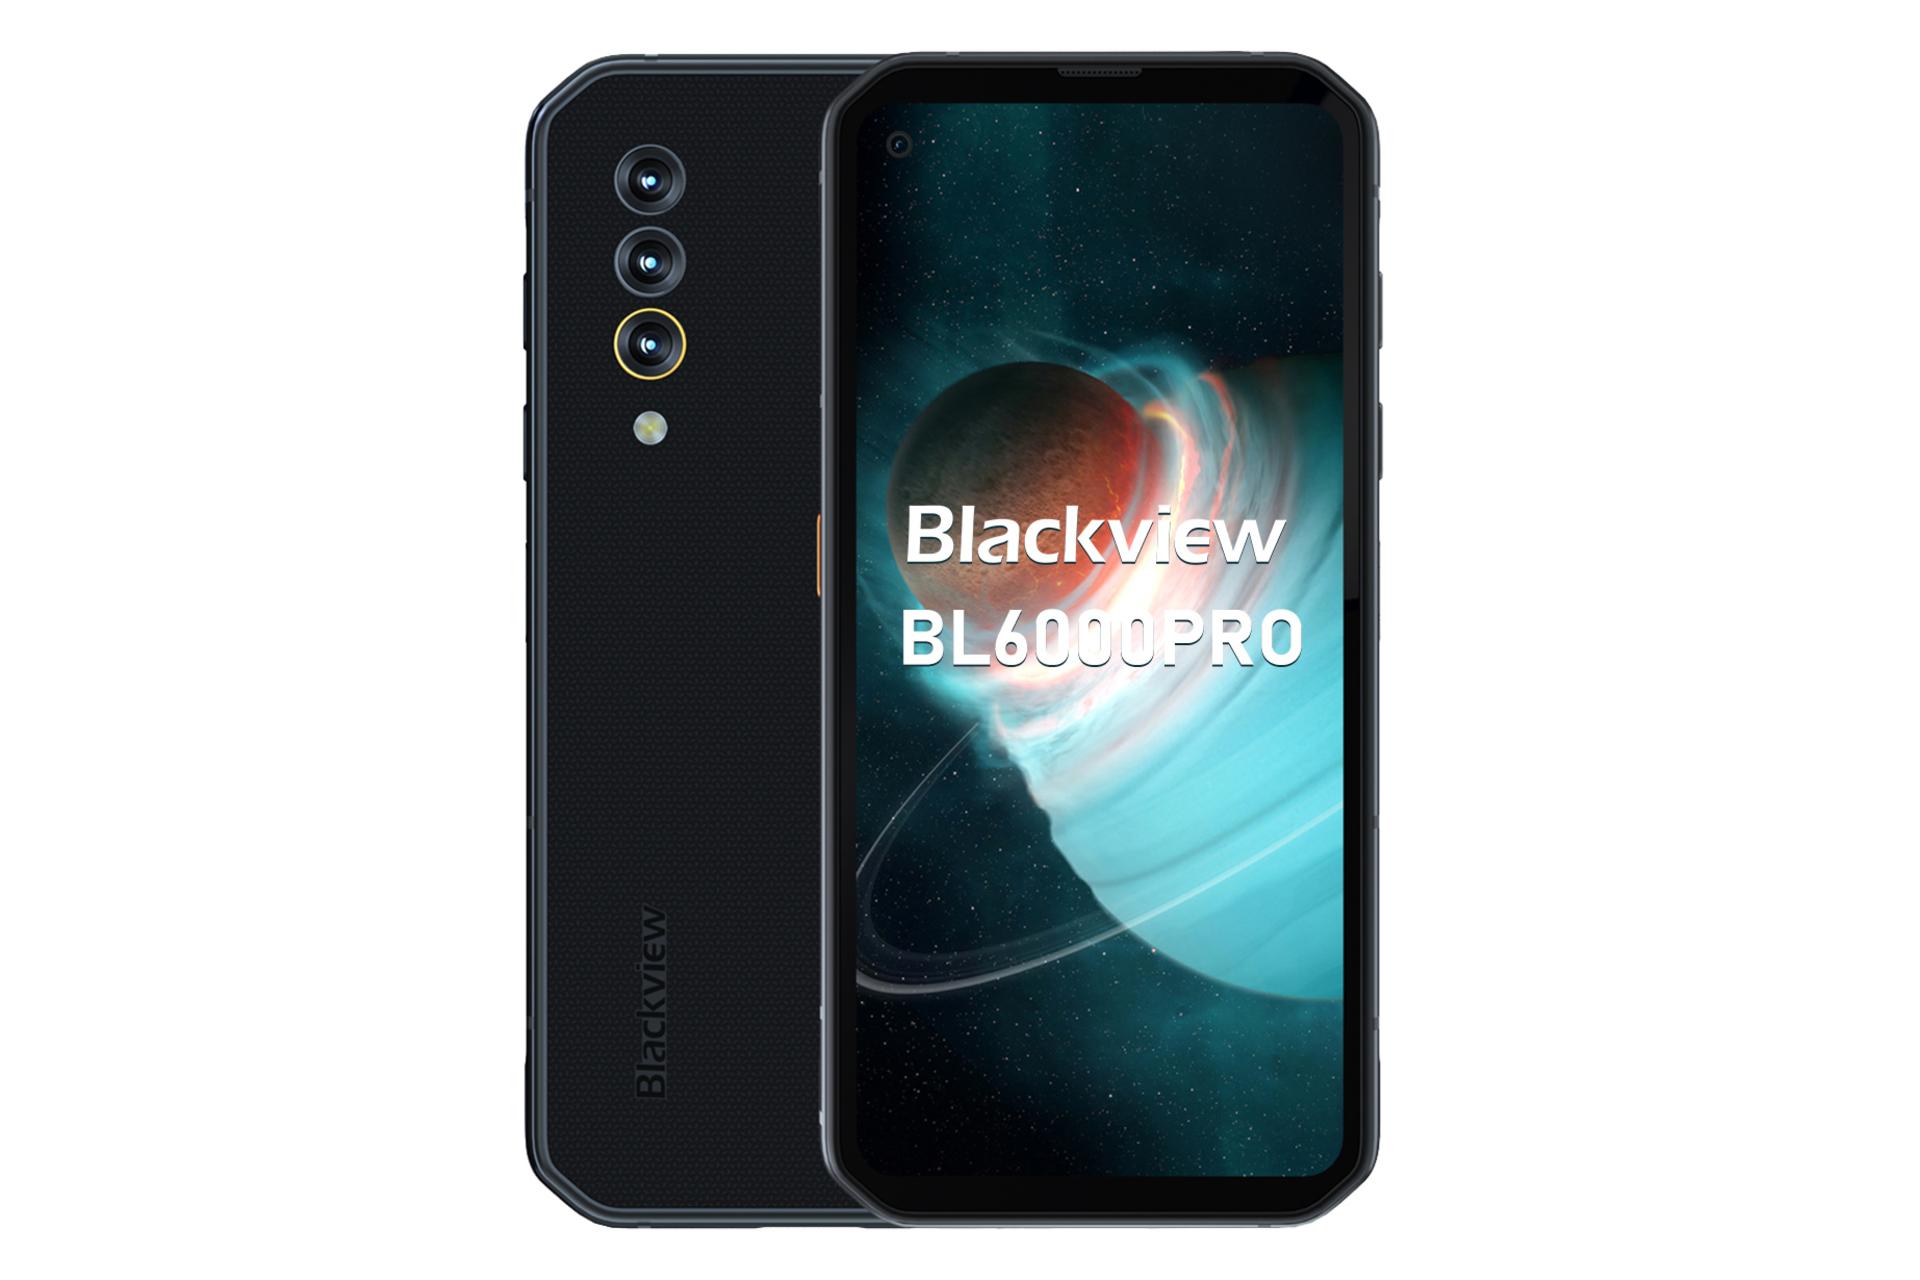 گوشی موبایل BL6000 پرو بلک ویو / Blackview BL6000 Pro مشکی